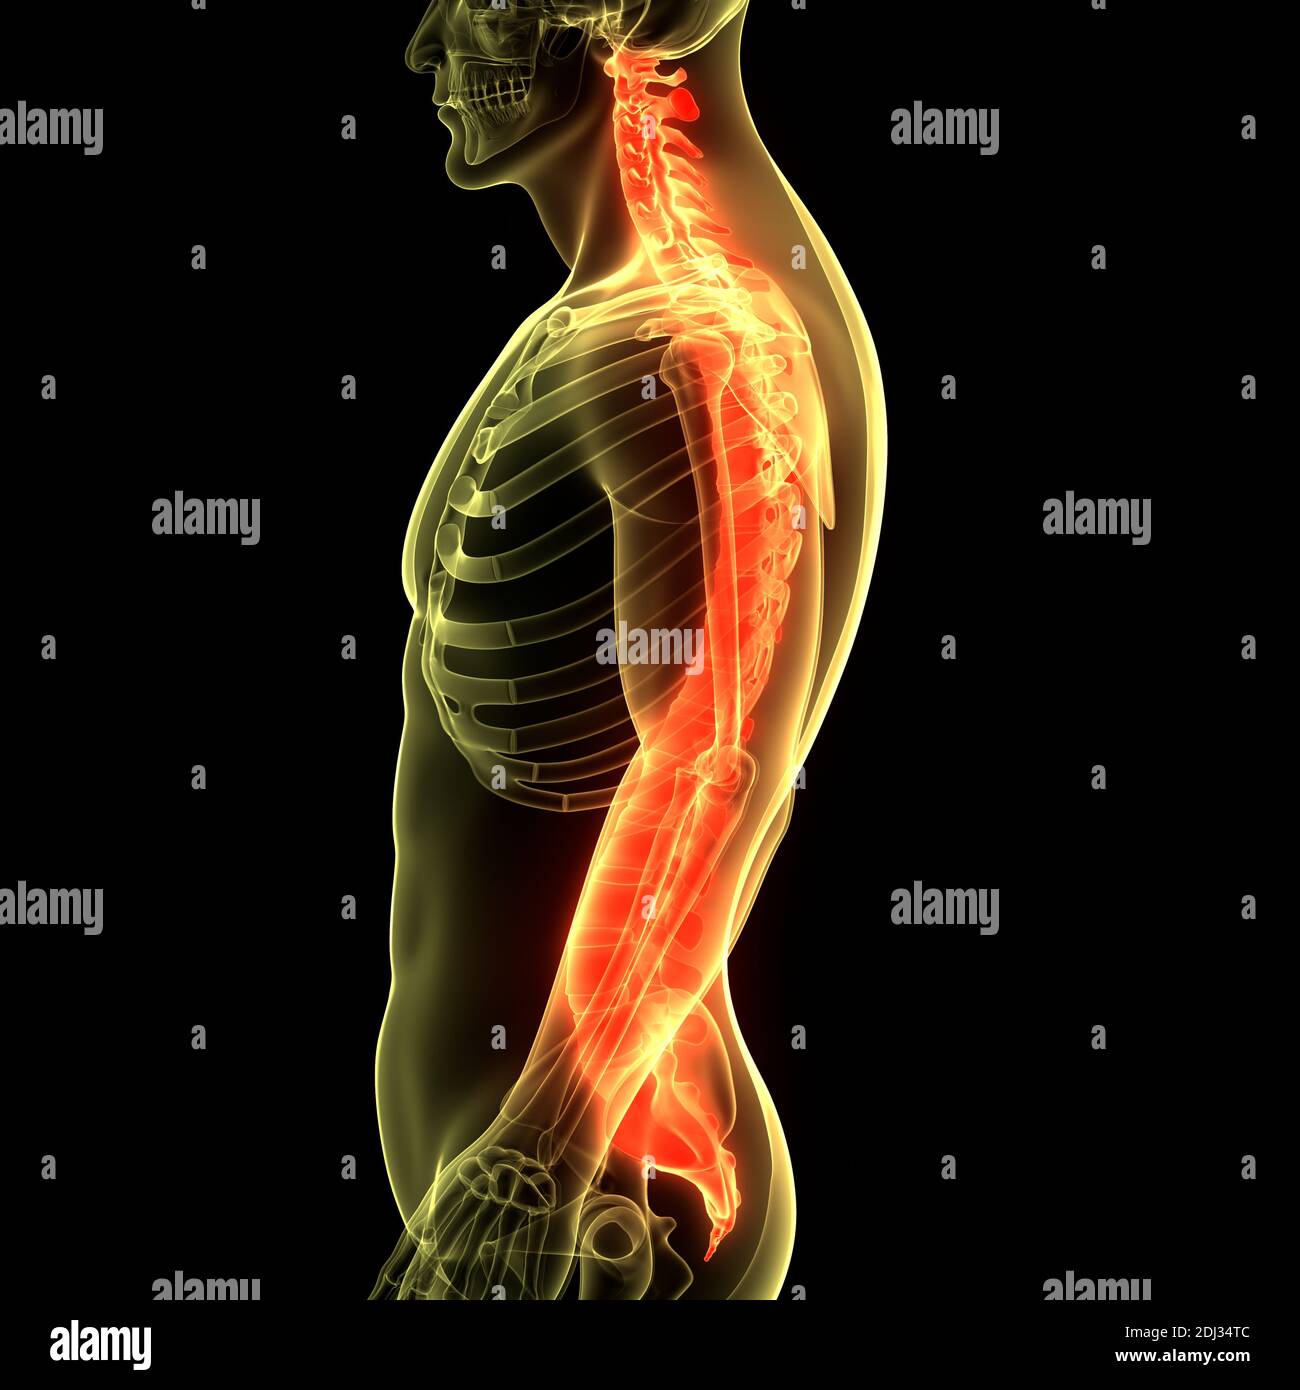 Columna Vertebral De La Médula Espinal De La Anatomía Del Sistema De Esqueleto Humano Fotografía 5018